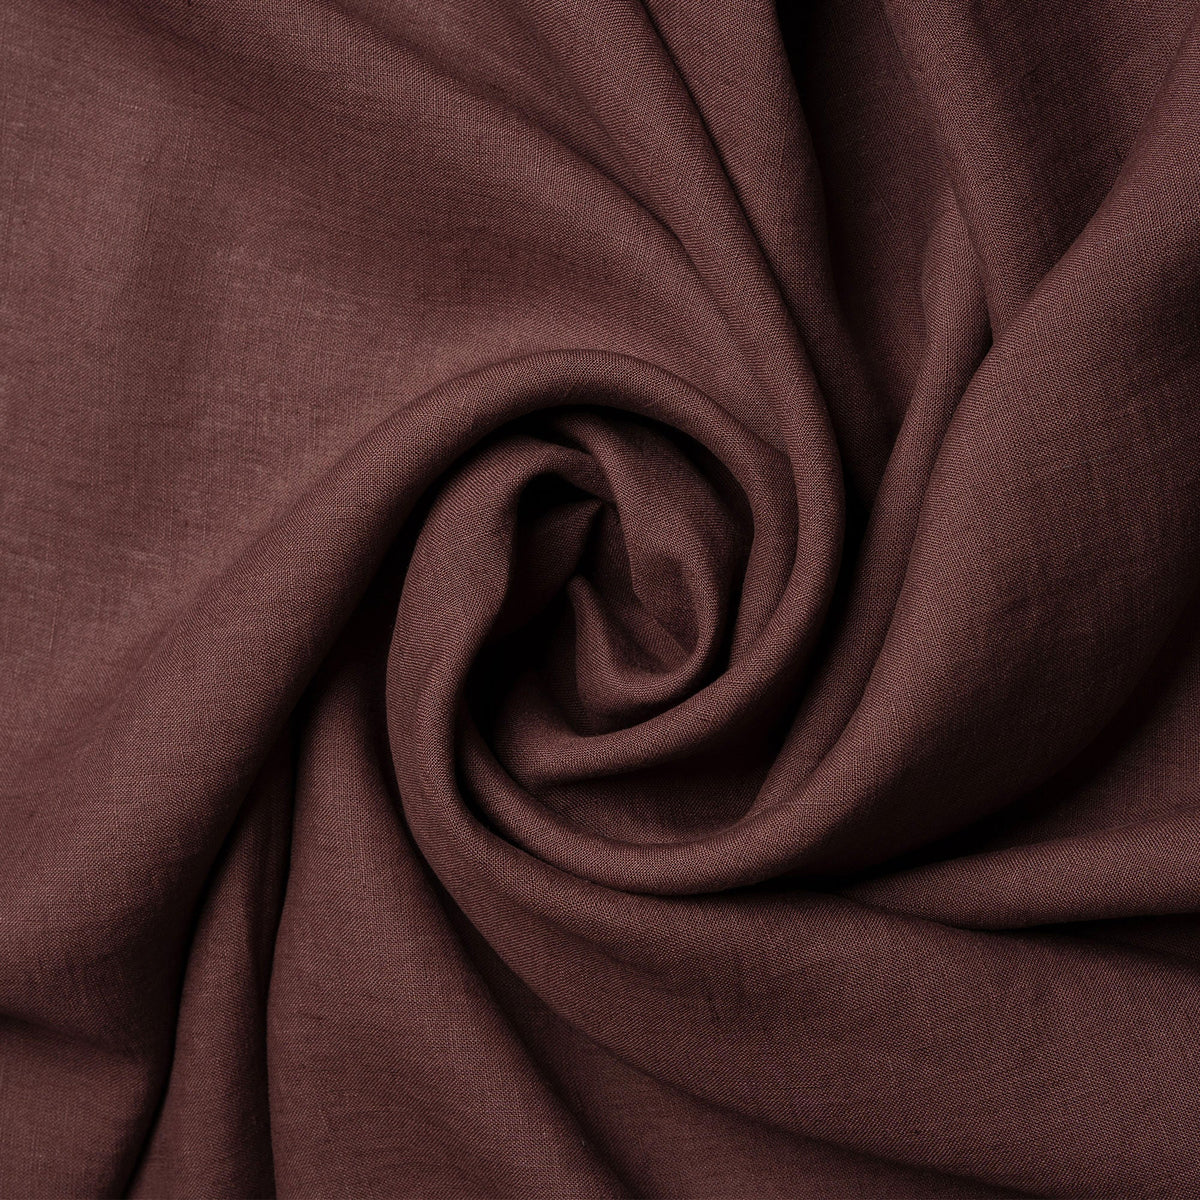 MENIQUE 100% Linen Tablecloth